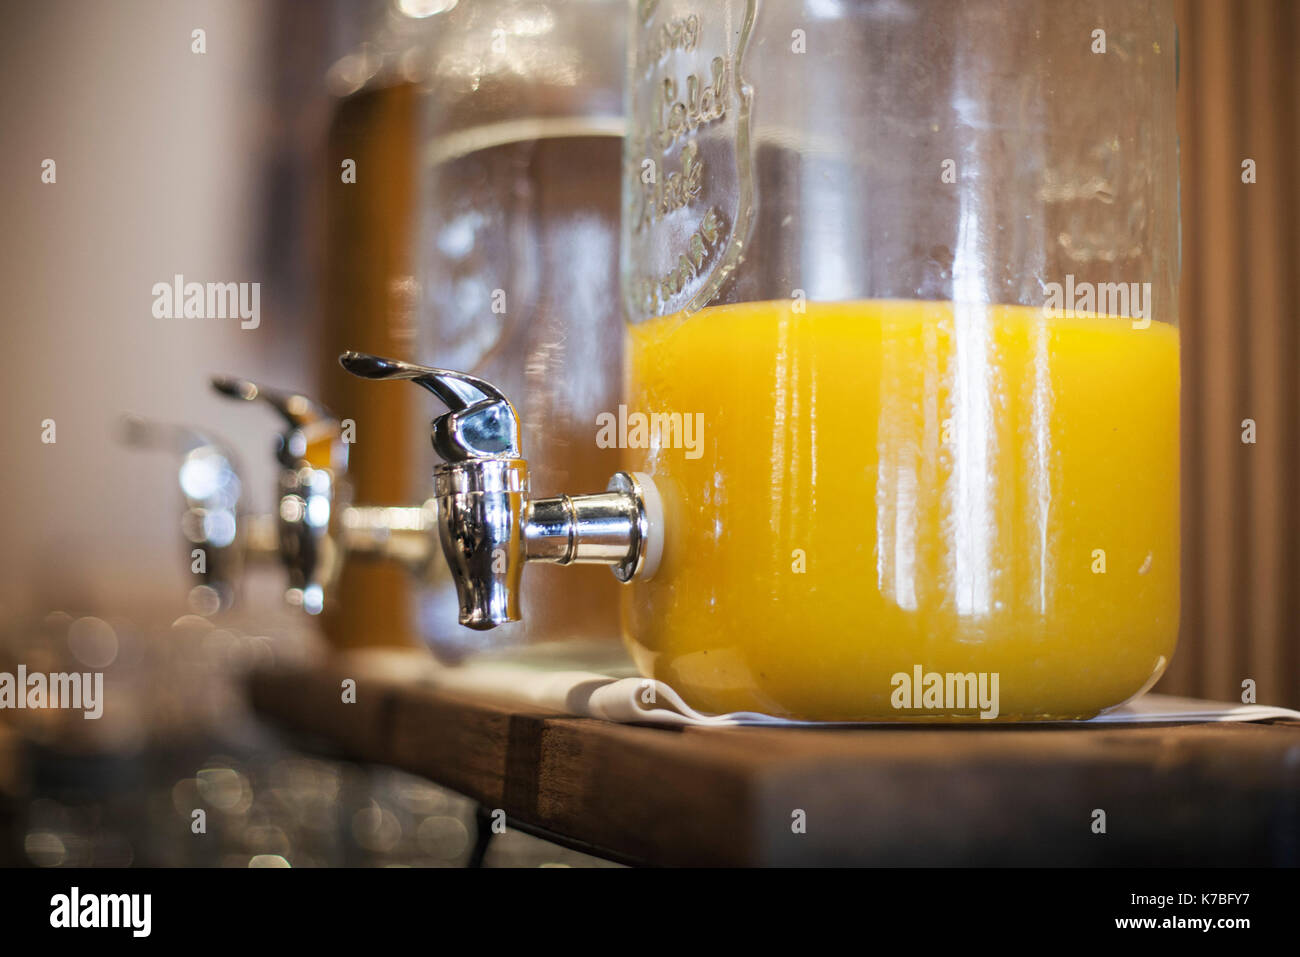 https://c8.alamy.com/comp/K7BFY7/orange-juice-in-glass-dispenser-K7BFY7.jpg